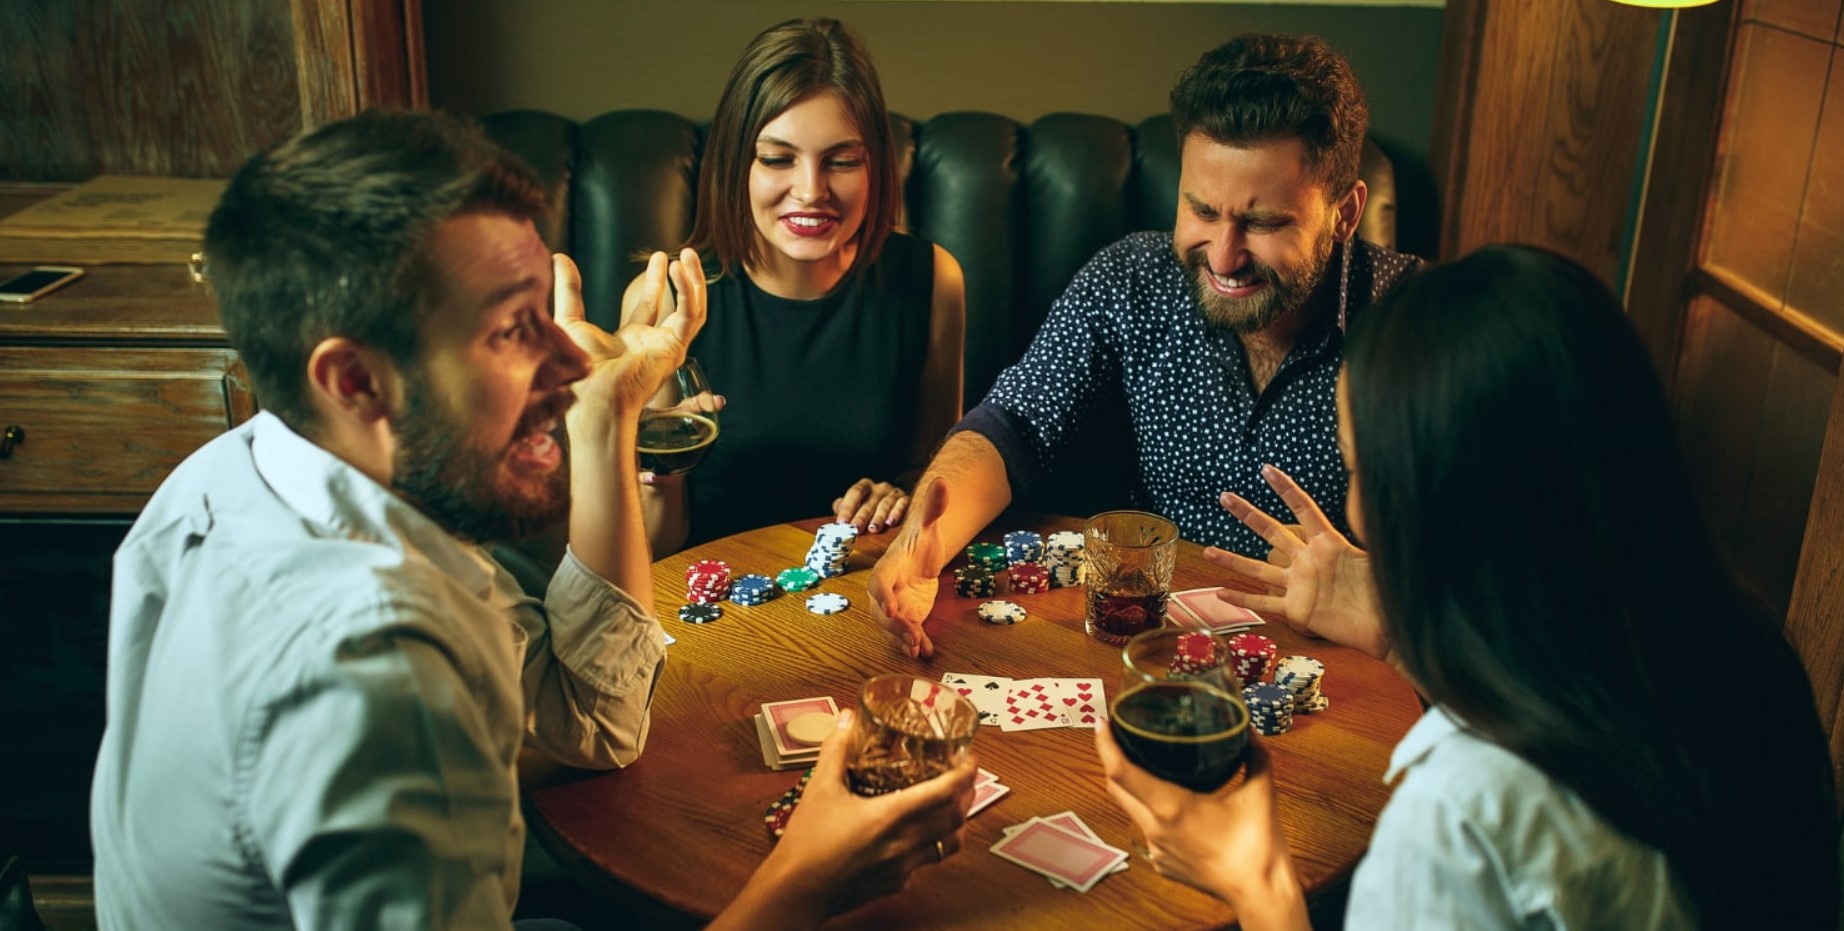 Игра в покер с друзьями: советы для успешного вечера.